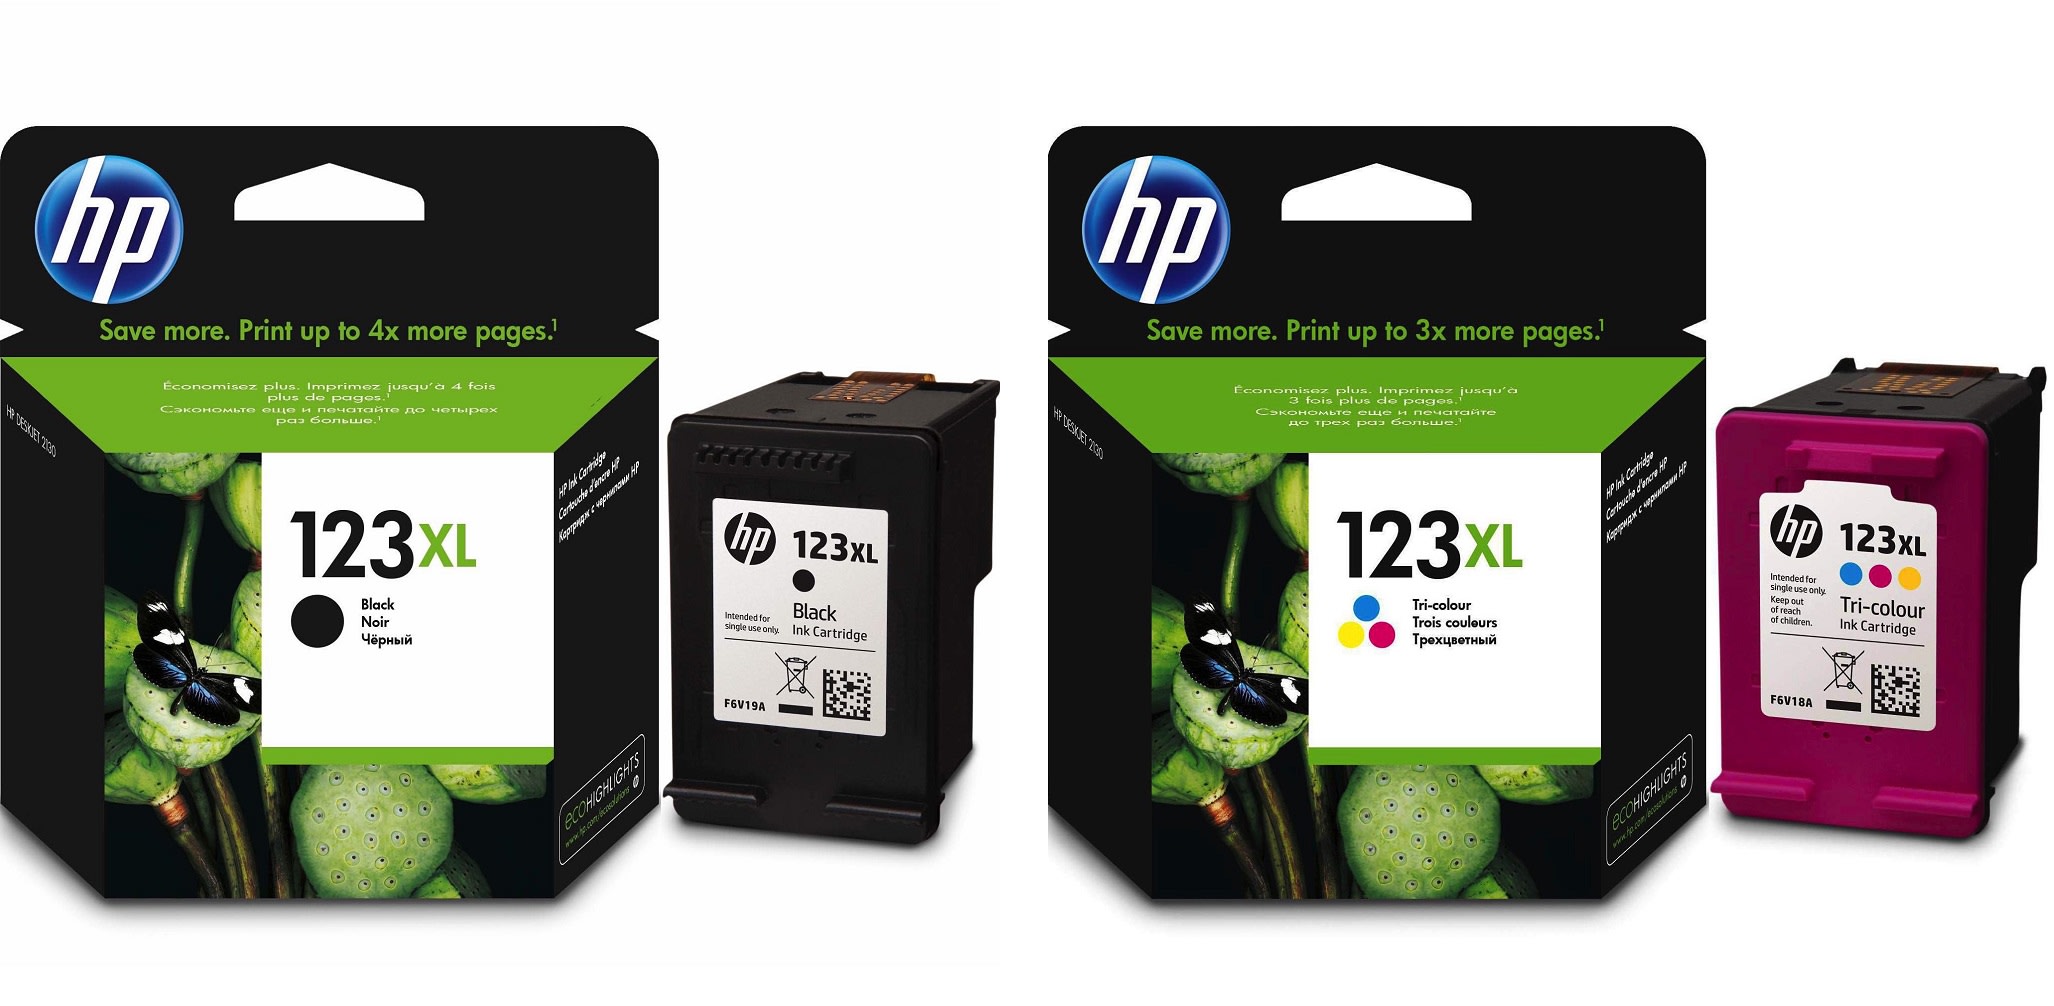 Картриджи hp 123XL для HP DJ 2130. Купить комплект оригинальных чернил.